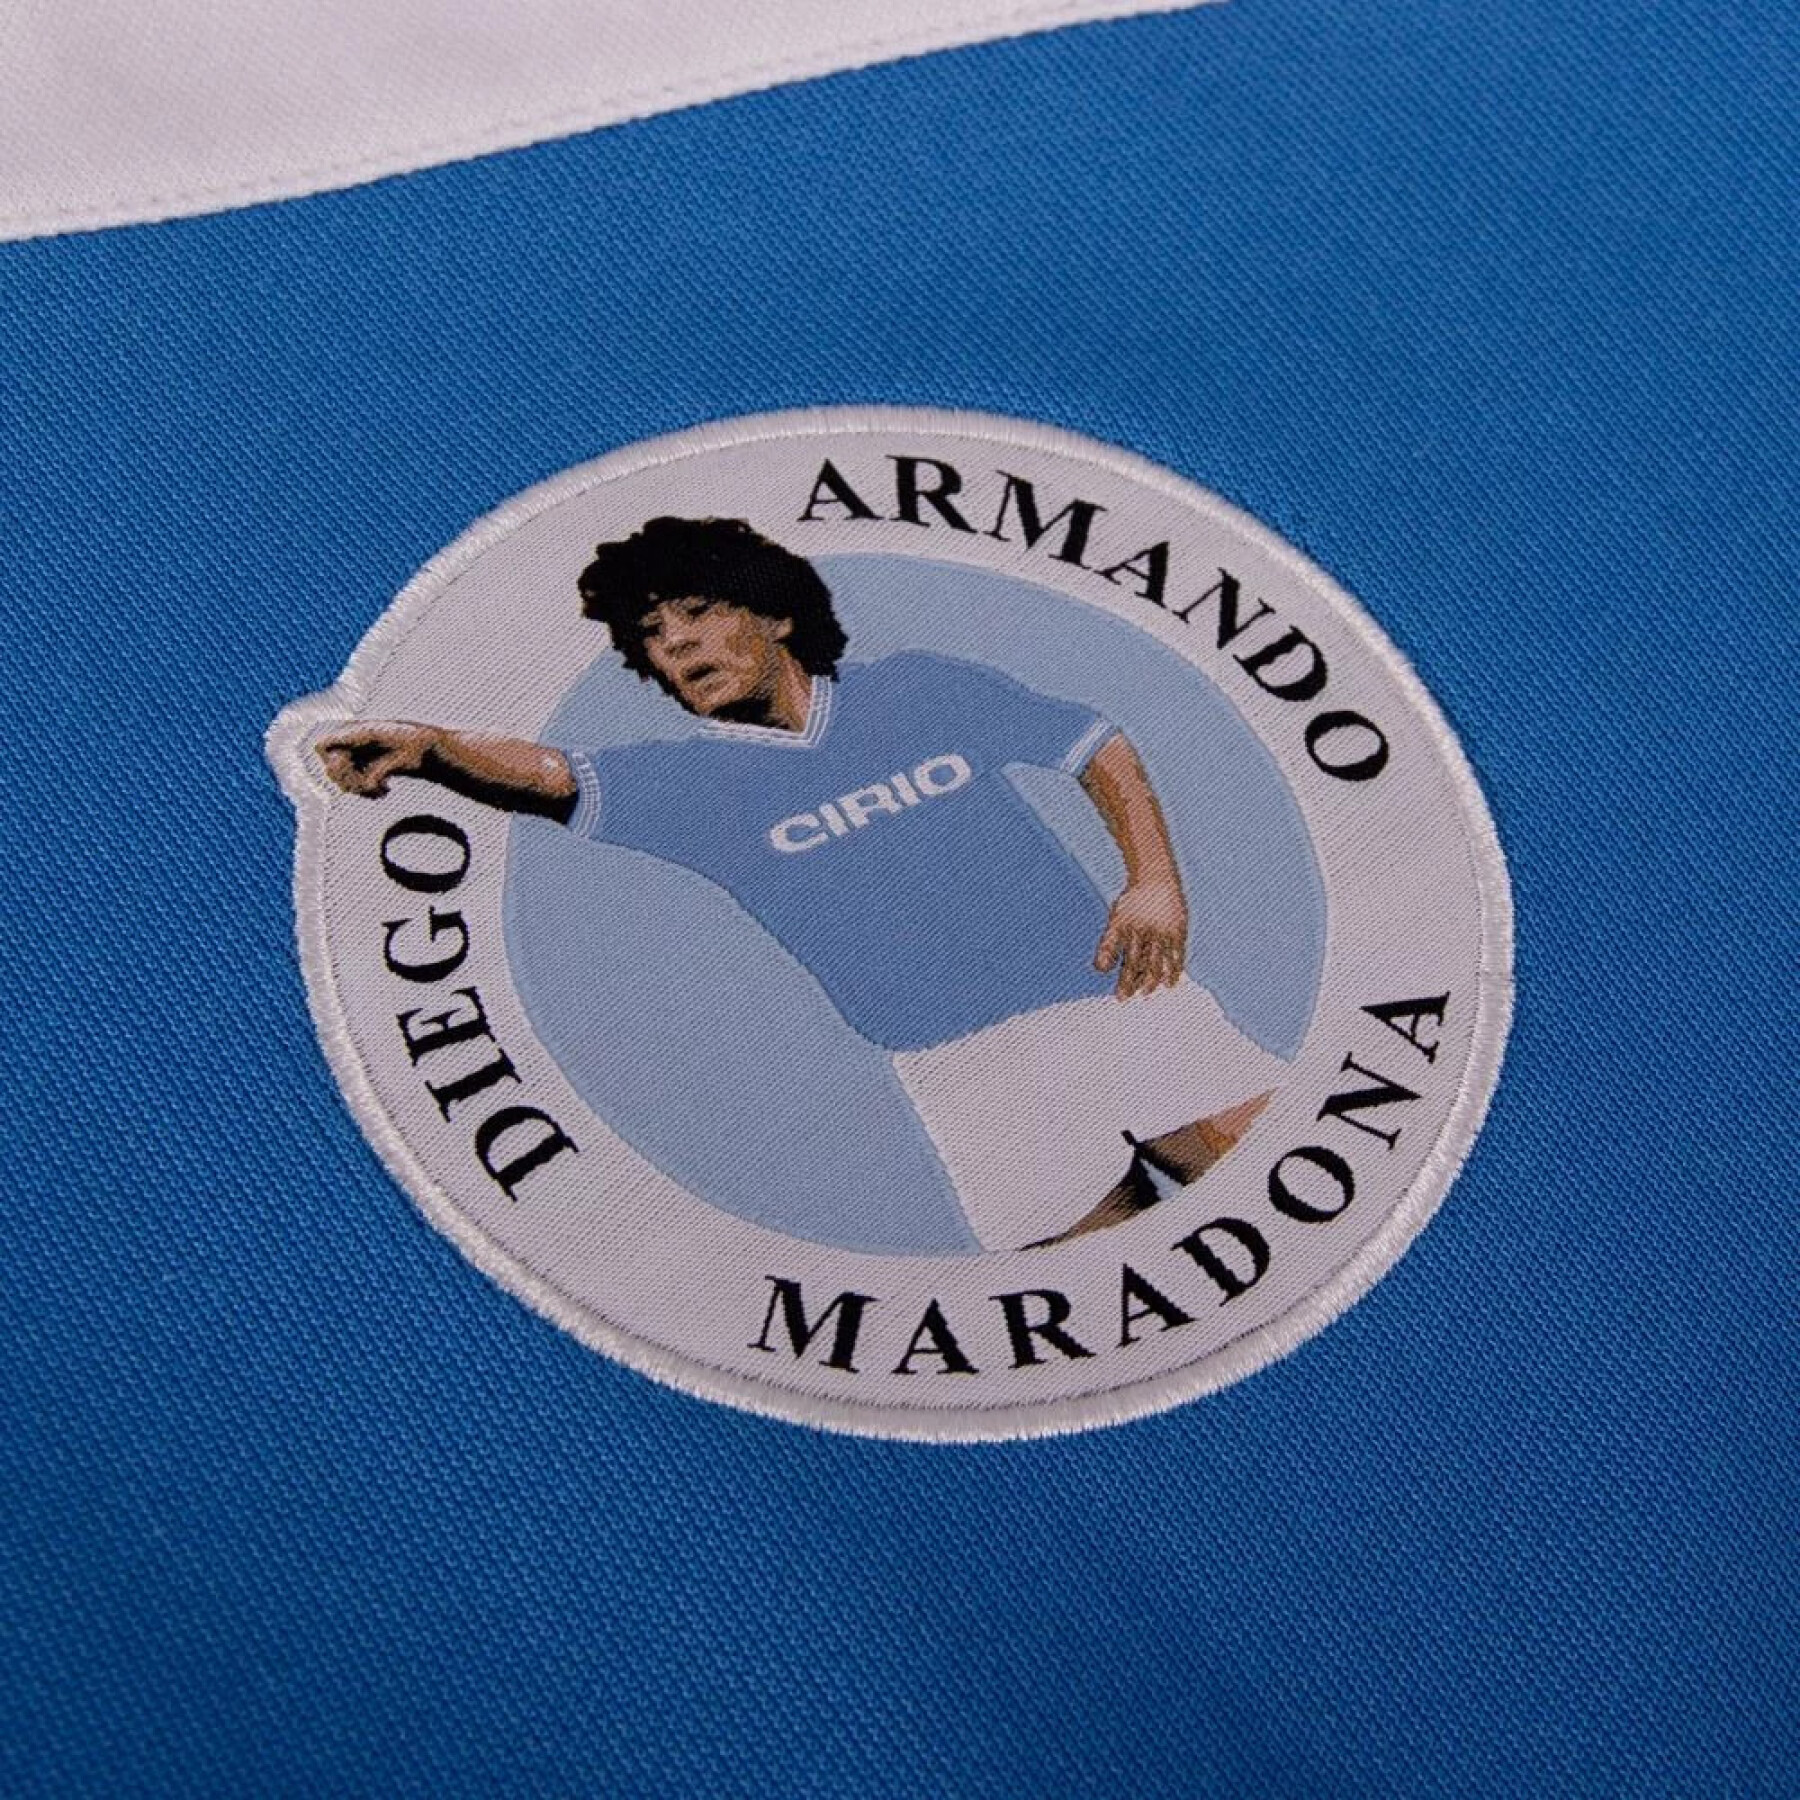 Felpa Maradona SSC Napoli 1984 Retro